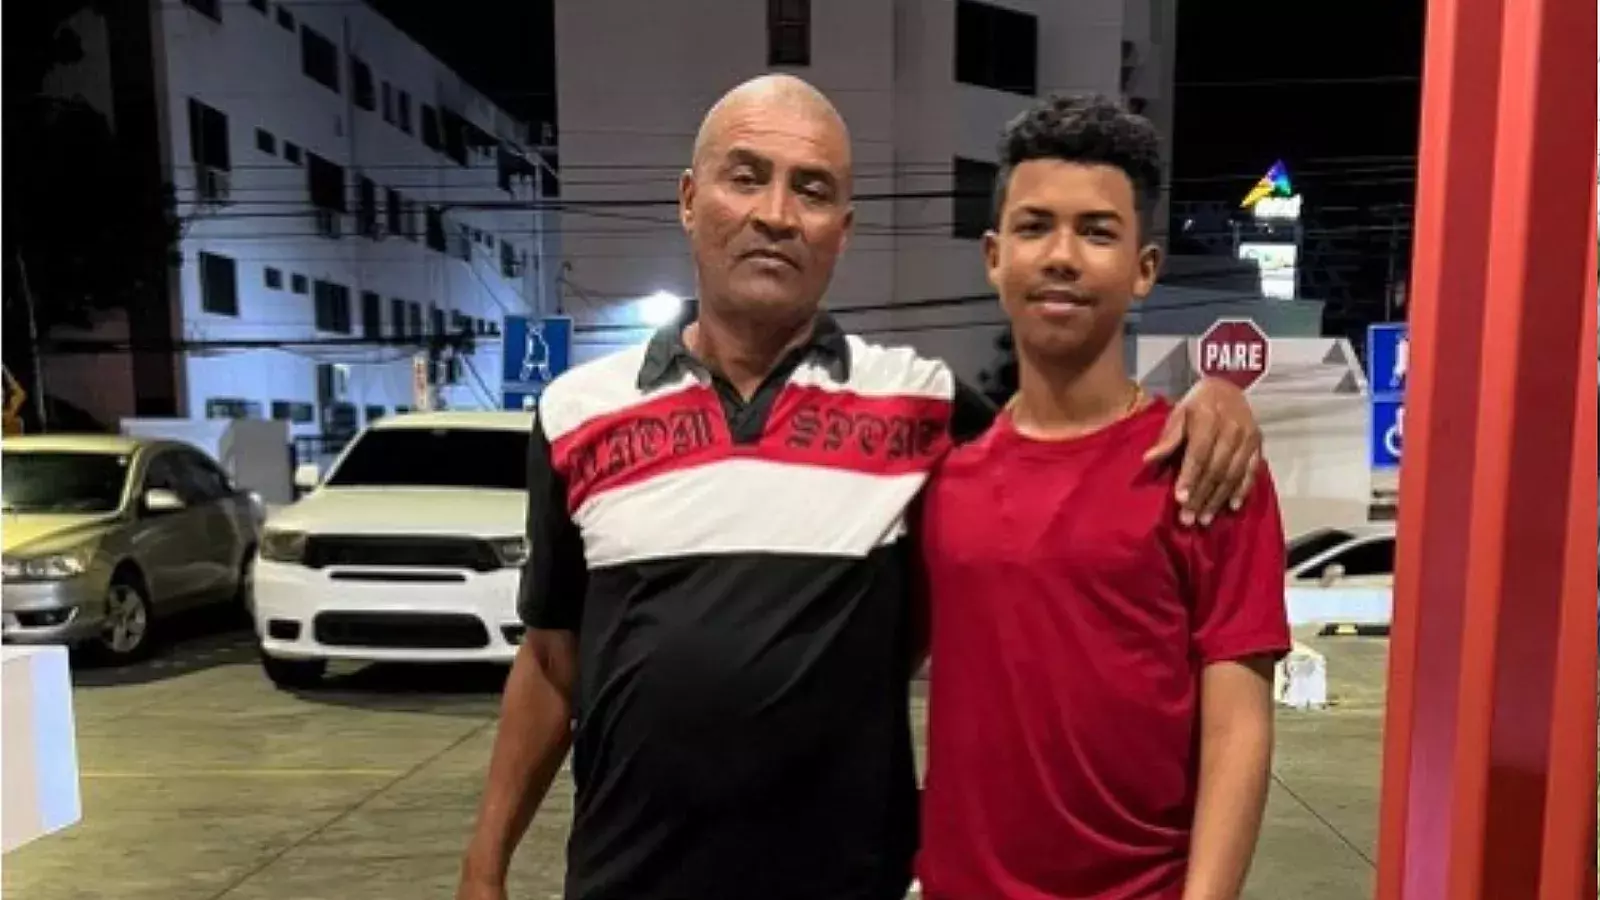 Luis Enrique Gurriel y su hijo de 12 años en Dominicana